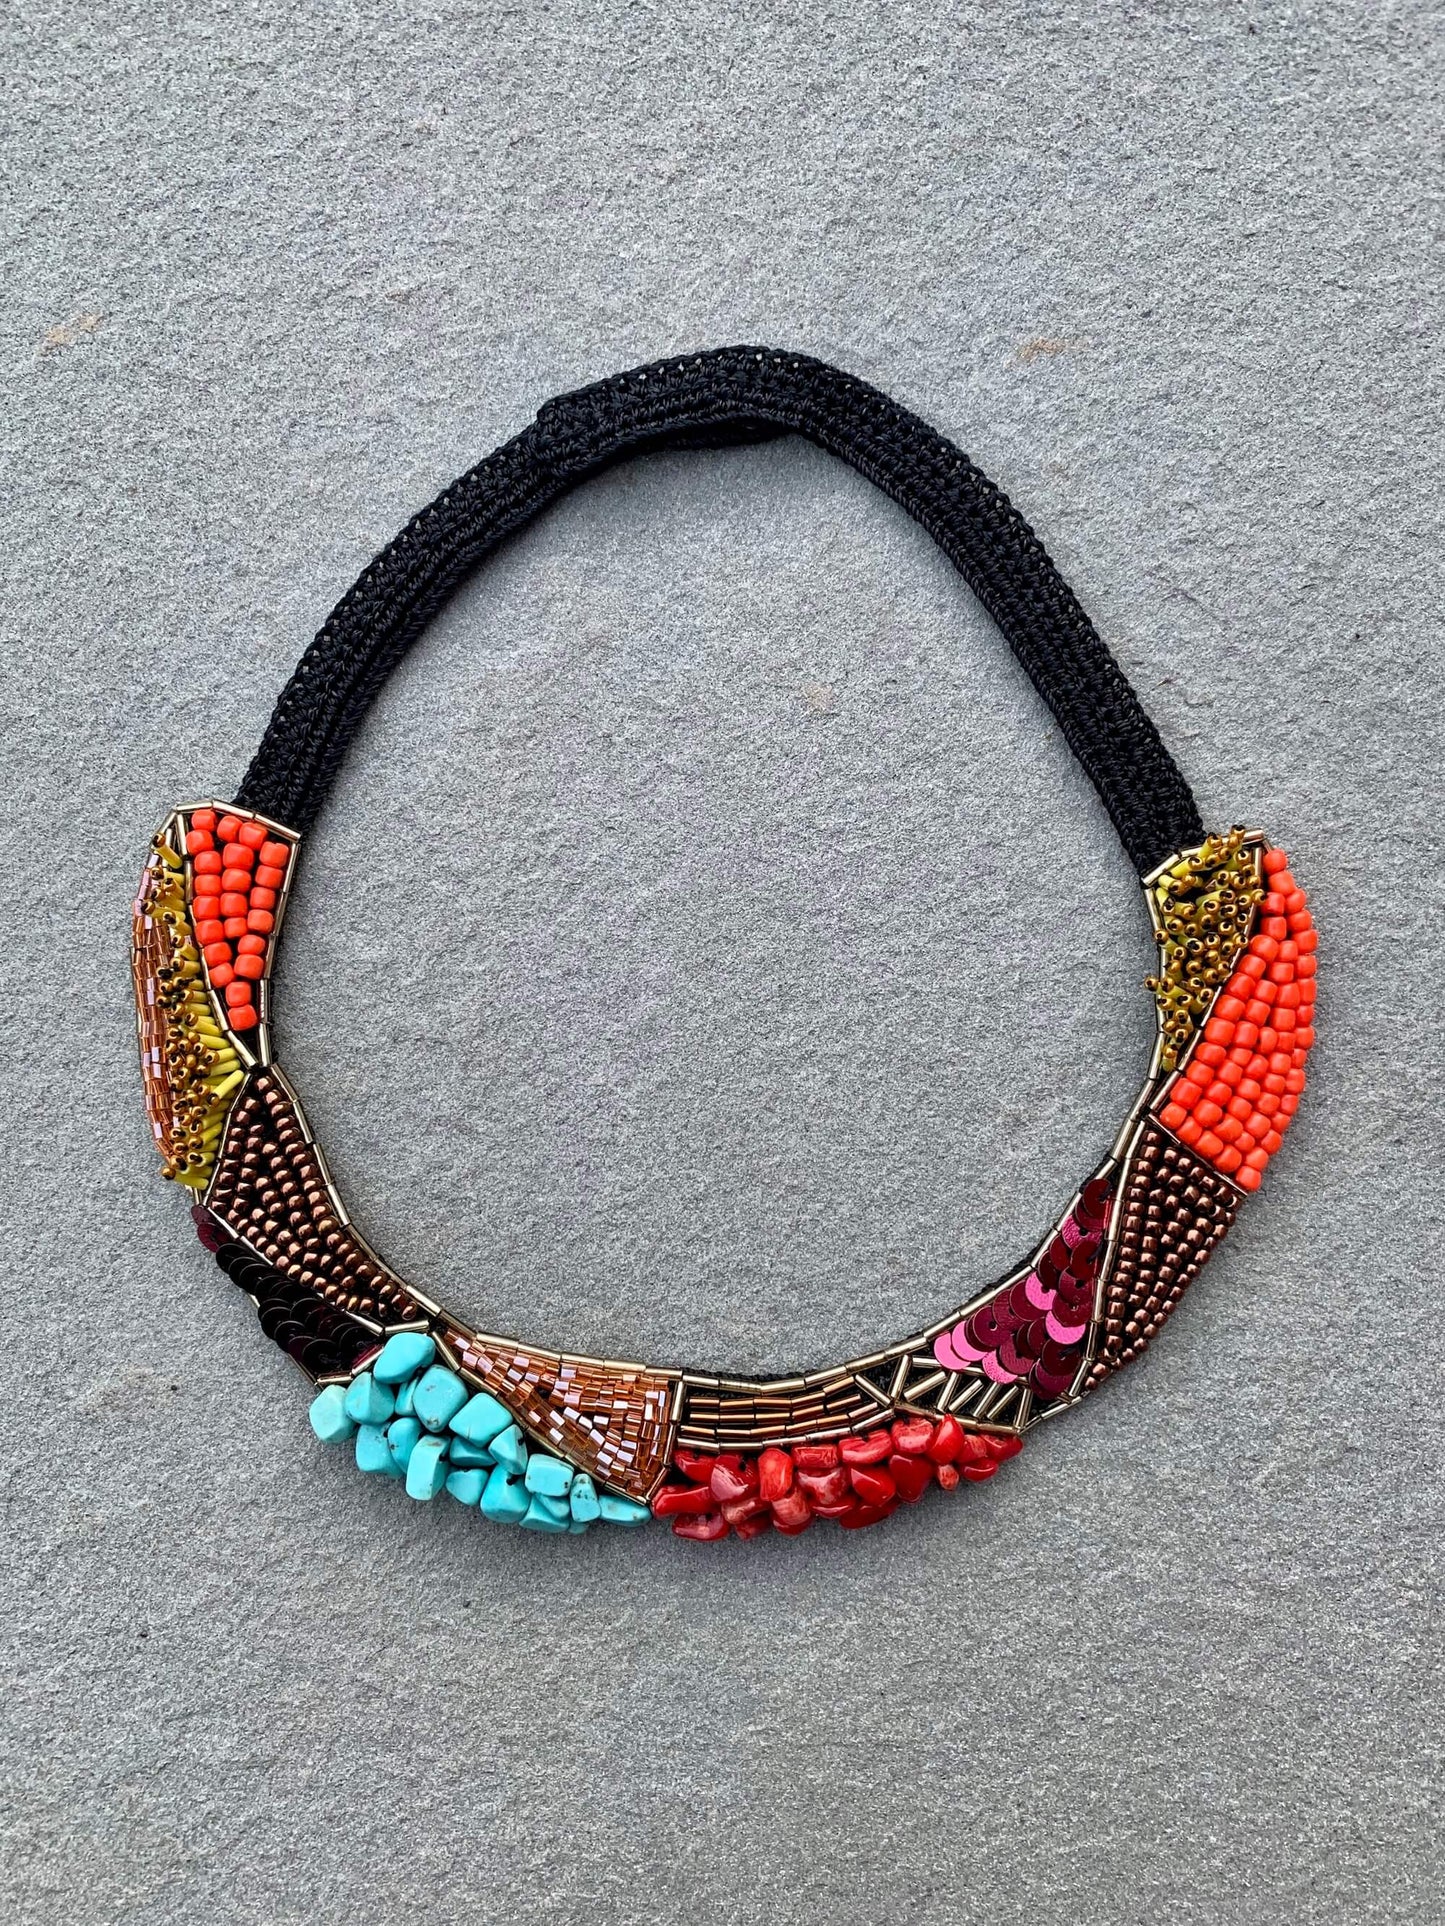 Bead Embroidery Handmade Keriman Necklace by Seyyah